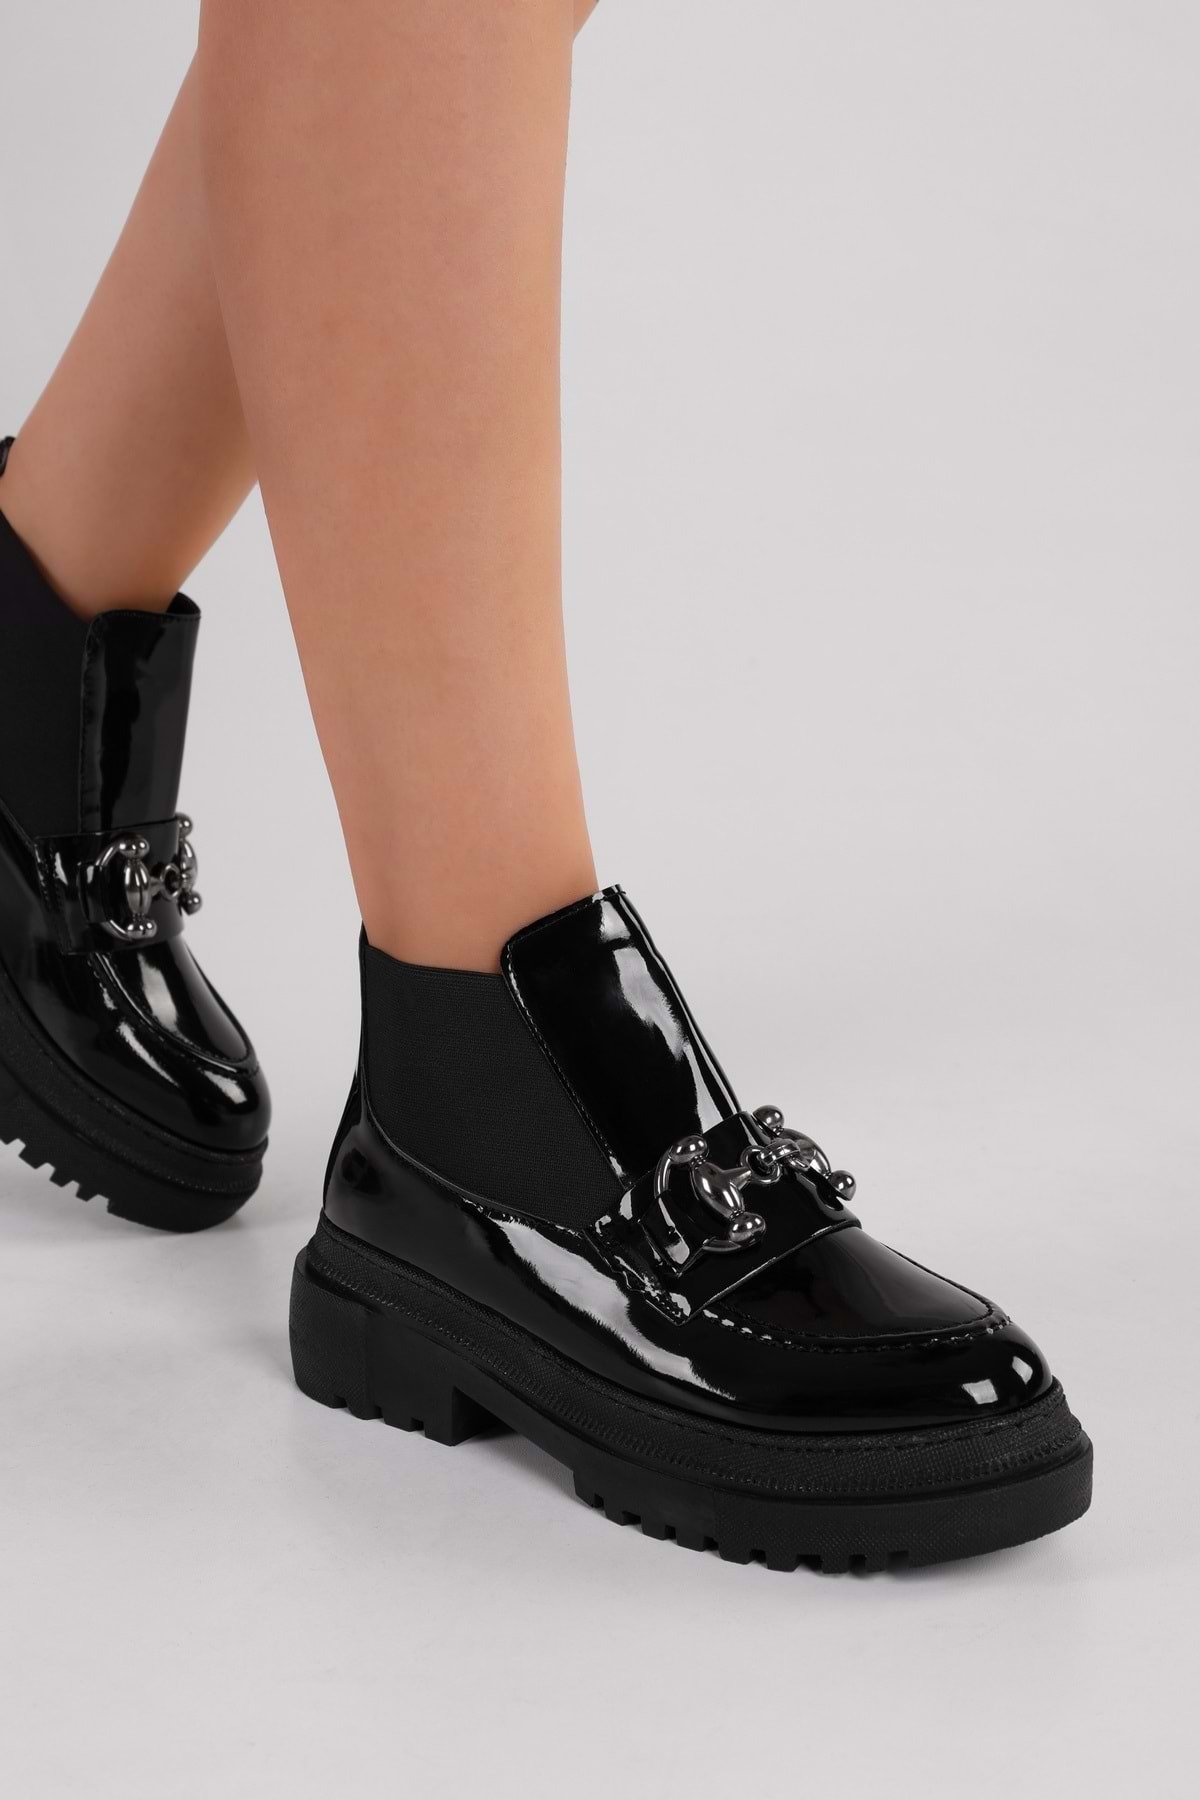 Levně Shoeberry Women's Tastor Black Patent Leather Buckled Boots Loafer Black Patent Leather